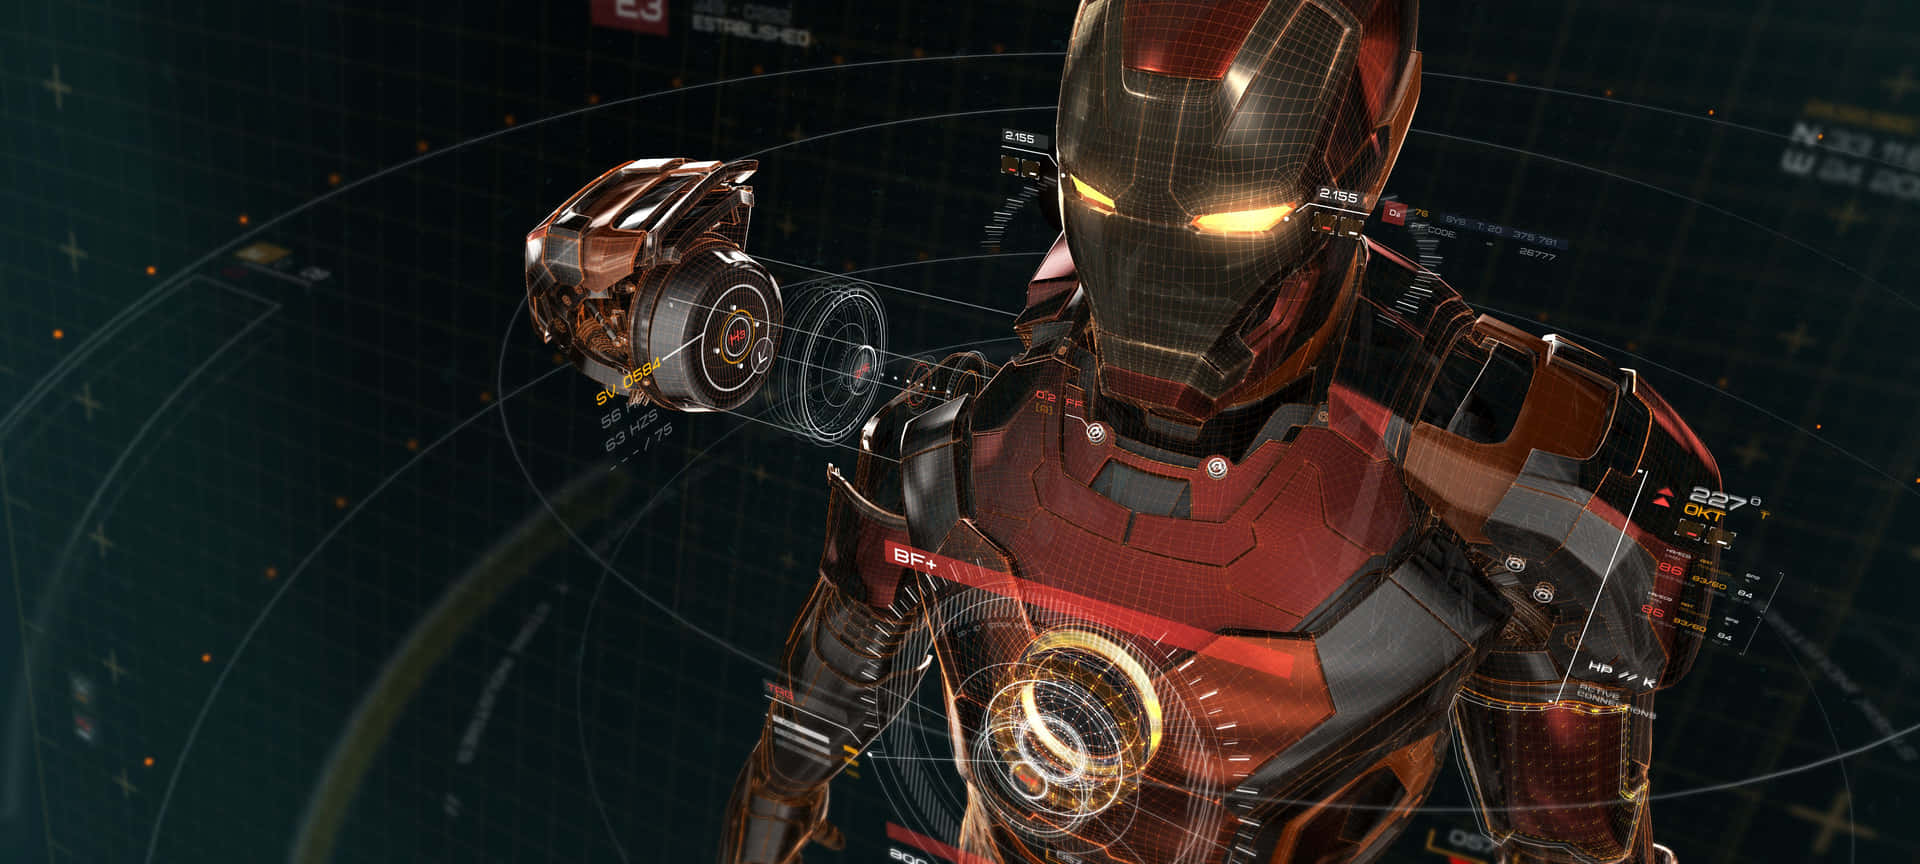 Tony Stark, A.K.A Iron Man. Wallpaper